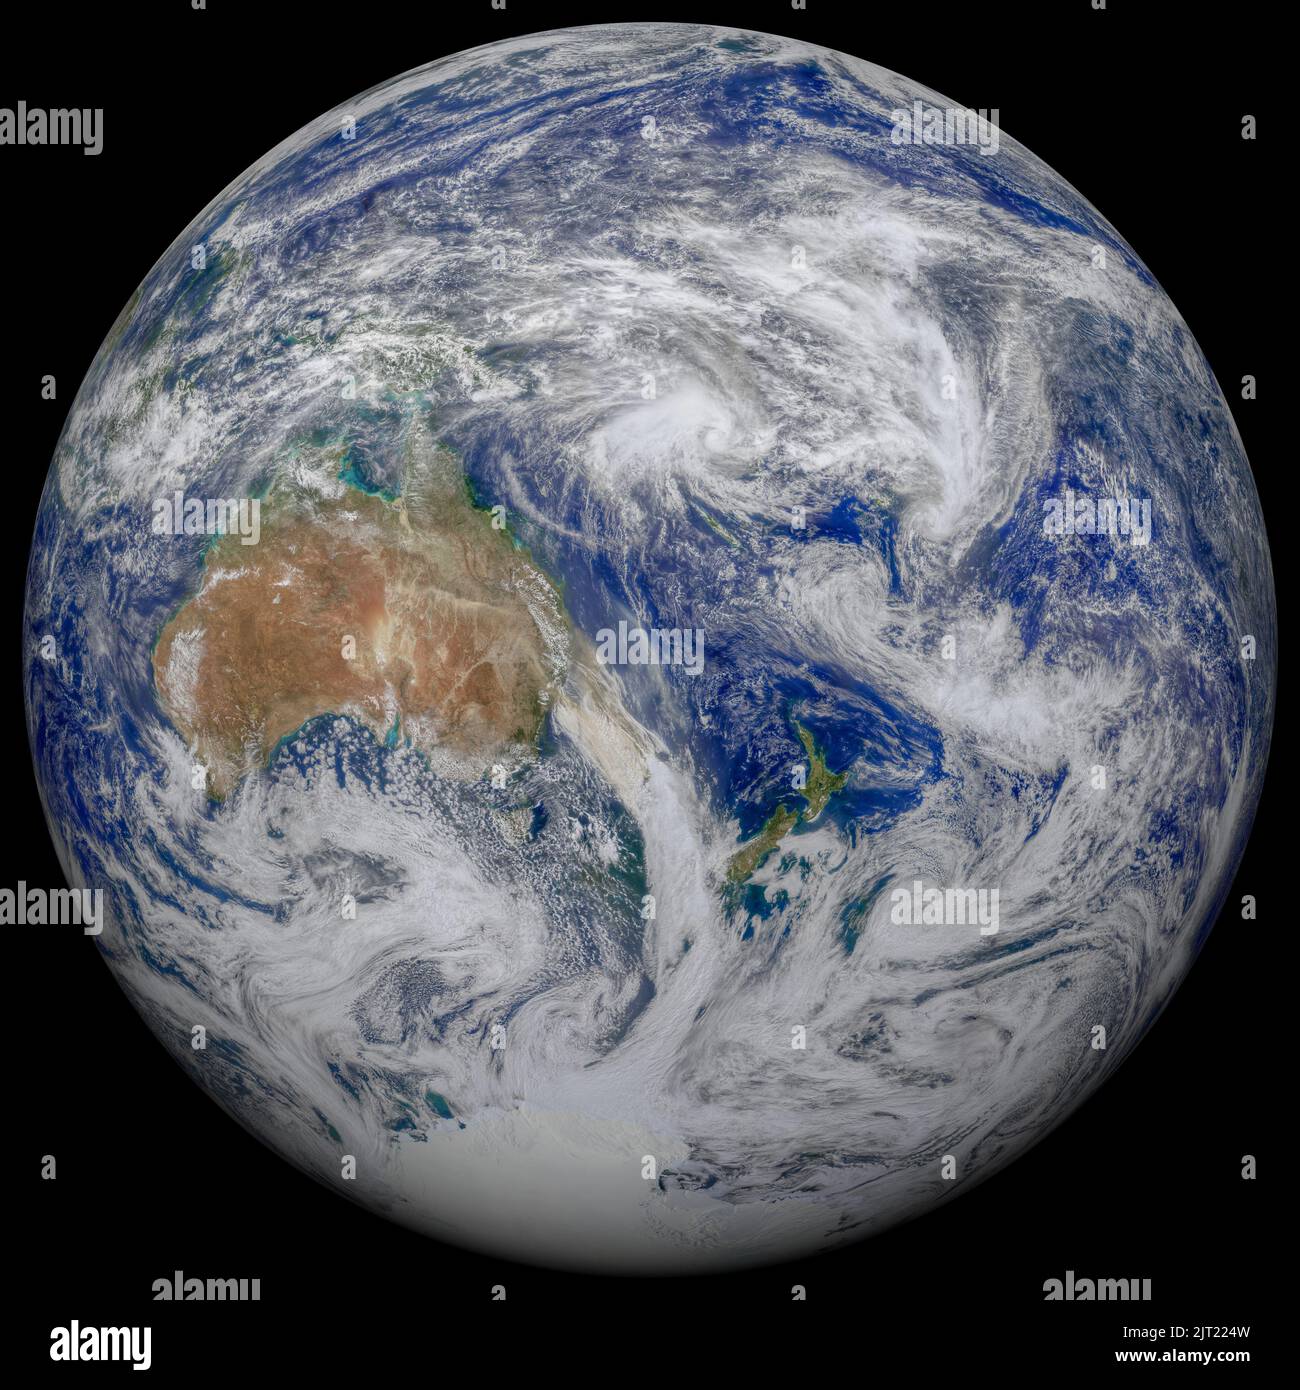 Vue satellite de la Terre montrant l'Australie et la Nouvelle-Zélande. Éléments de cette image fournis par la NASA Banque D'Images